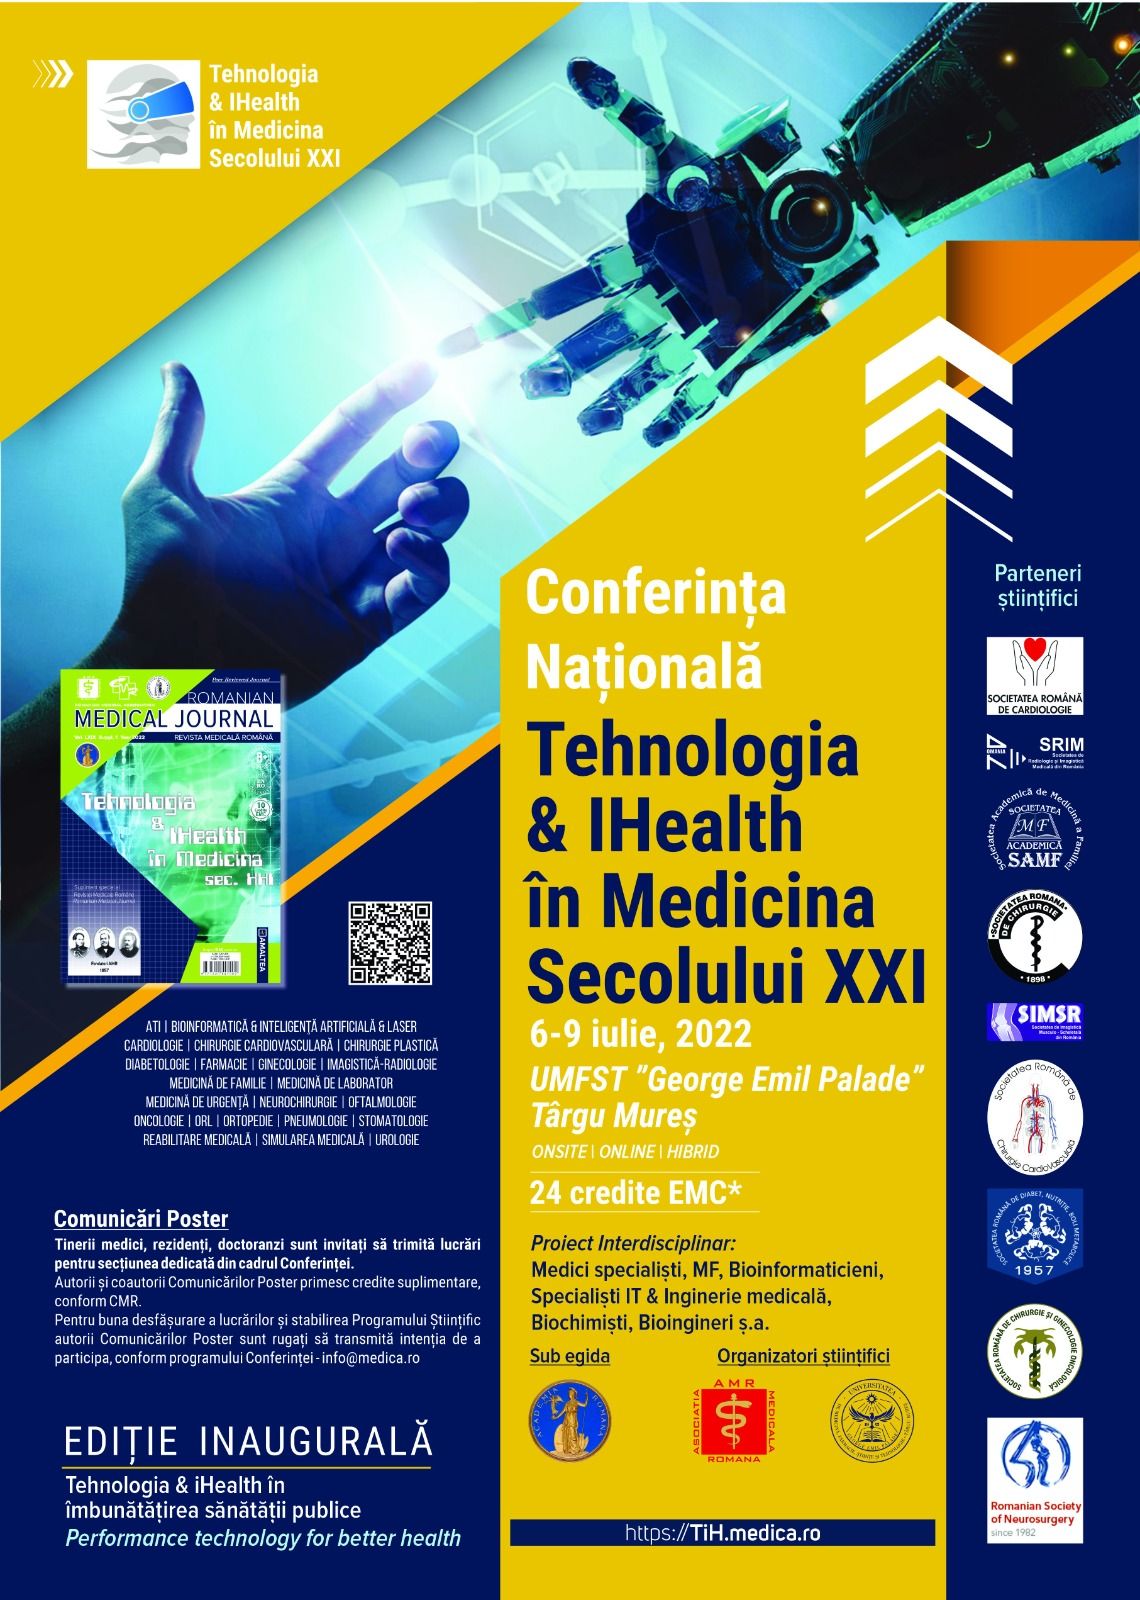 Conferința Națională „Tehnologia & IHealth în Medicina Secolului XXI” are loc în iulie